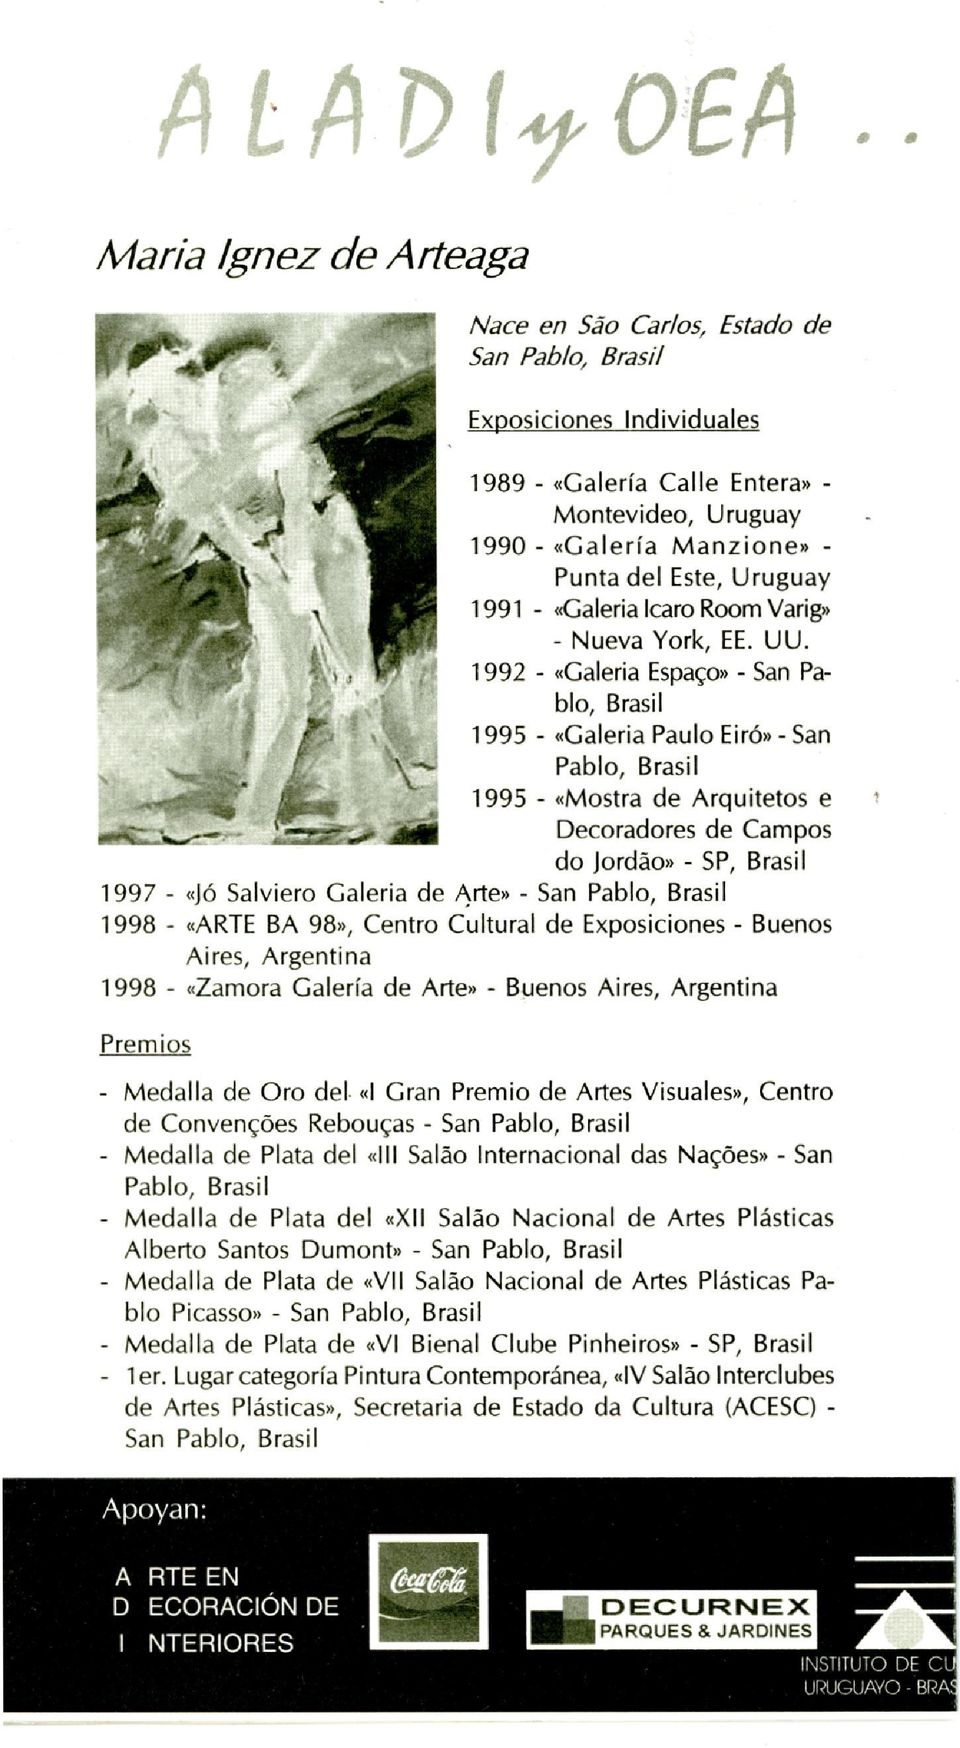 1992 - «Galeria EspaÇo» - San Pablo, Brasil 1995 - «Galeria Paulo Eiró»- San Pablo, Brasil 1995 - «Mostra de Arquitetos e Decoradores de Campos do lordáo» - SP, Brasil 1997 - «Jó Salviero Galeria de